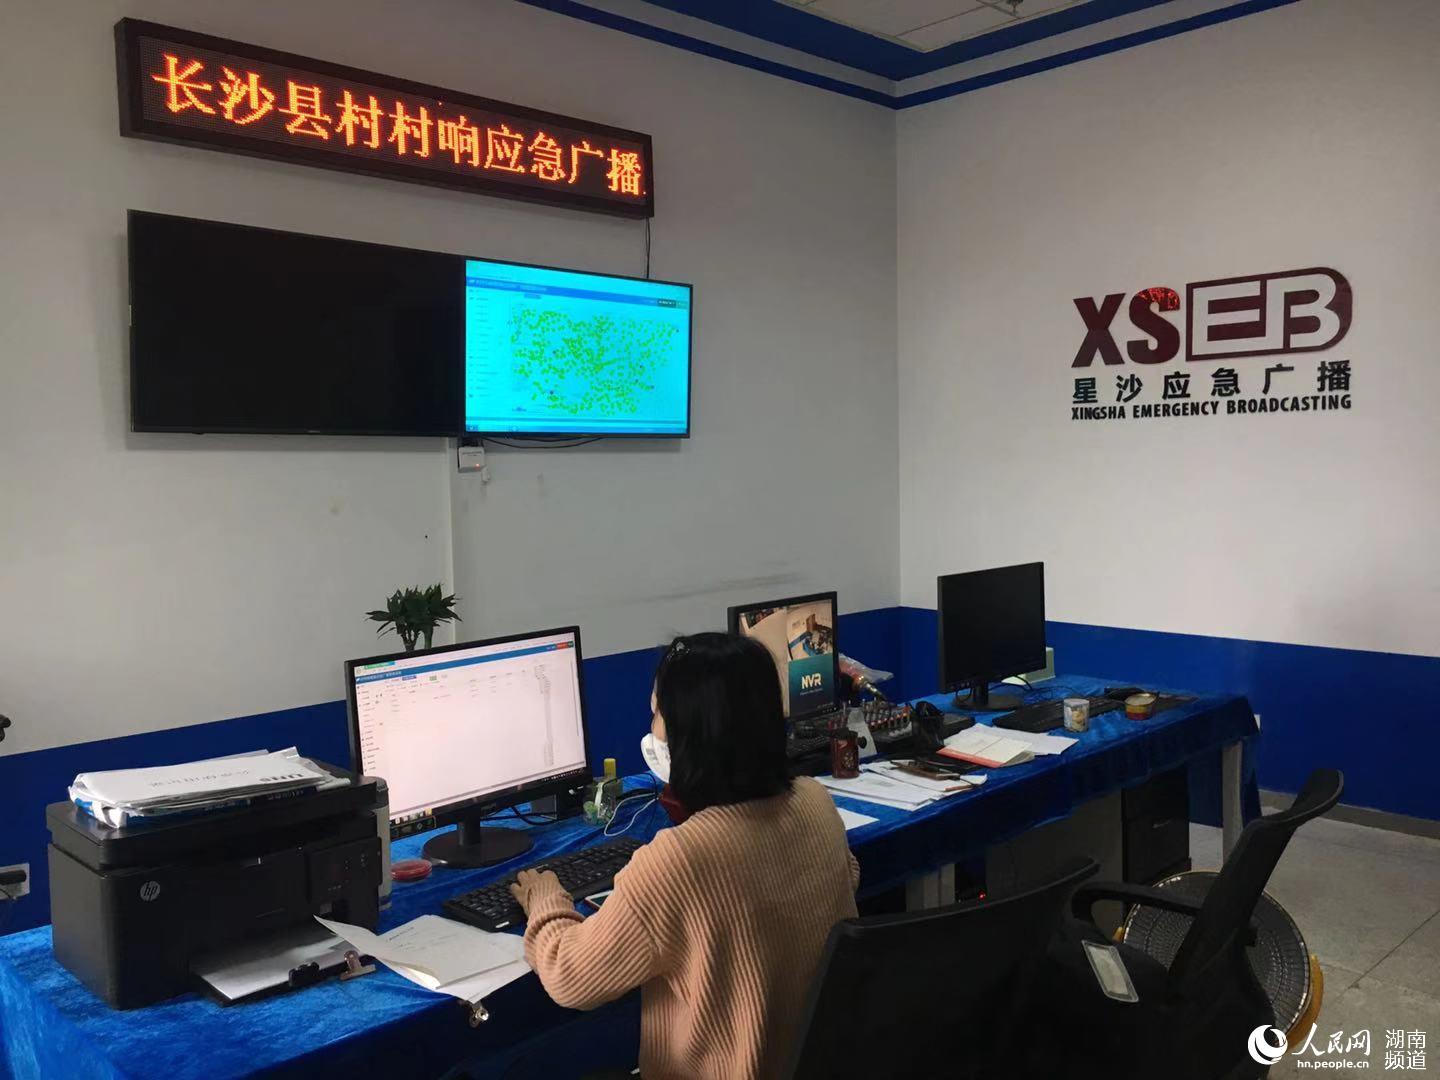 长沙县村村响应急广播监控管理中心。柳晓峰 摄